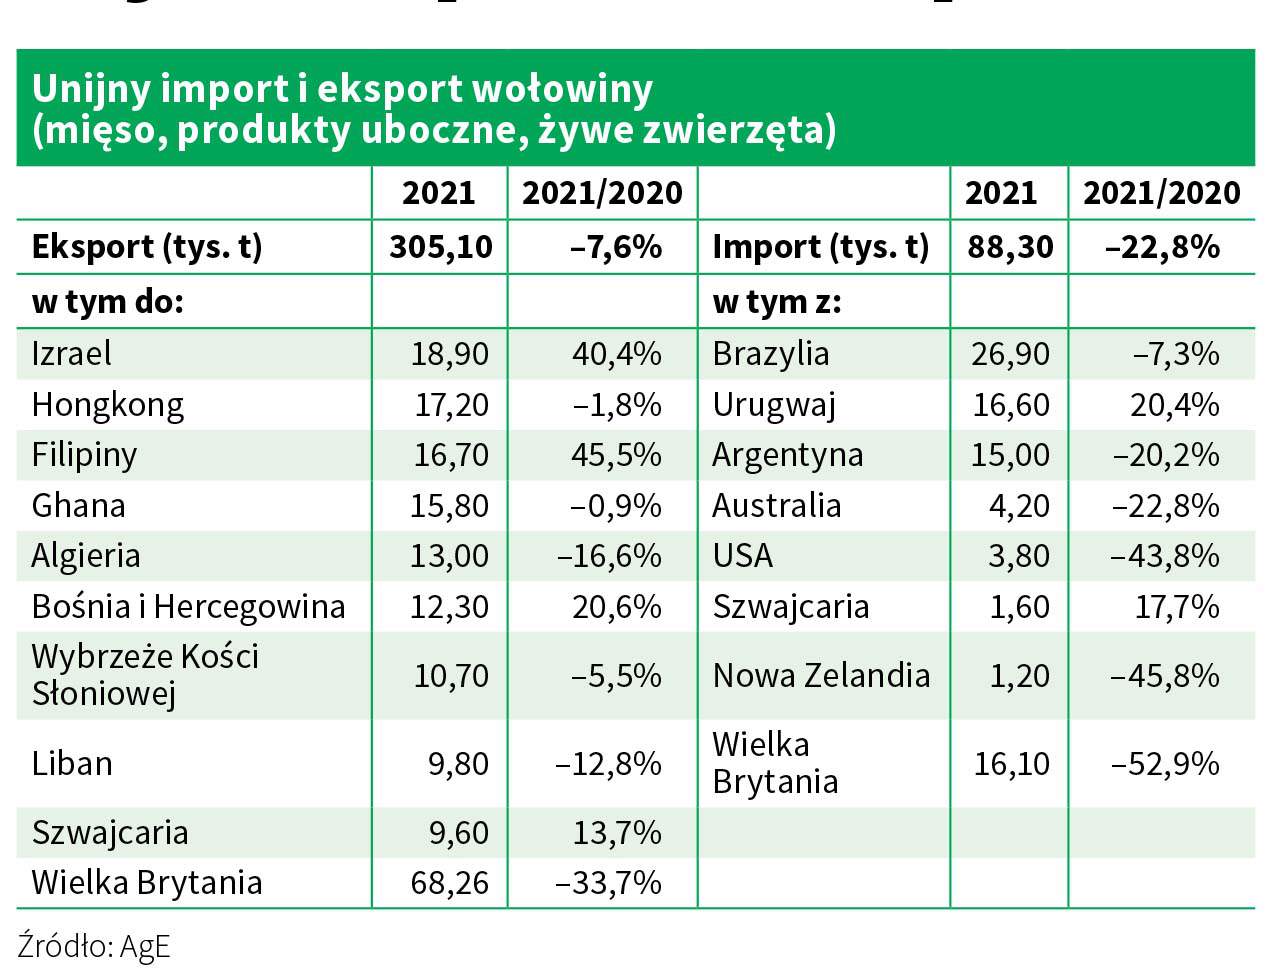 Żywiec wołowy - cenę trzyma spadek importu